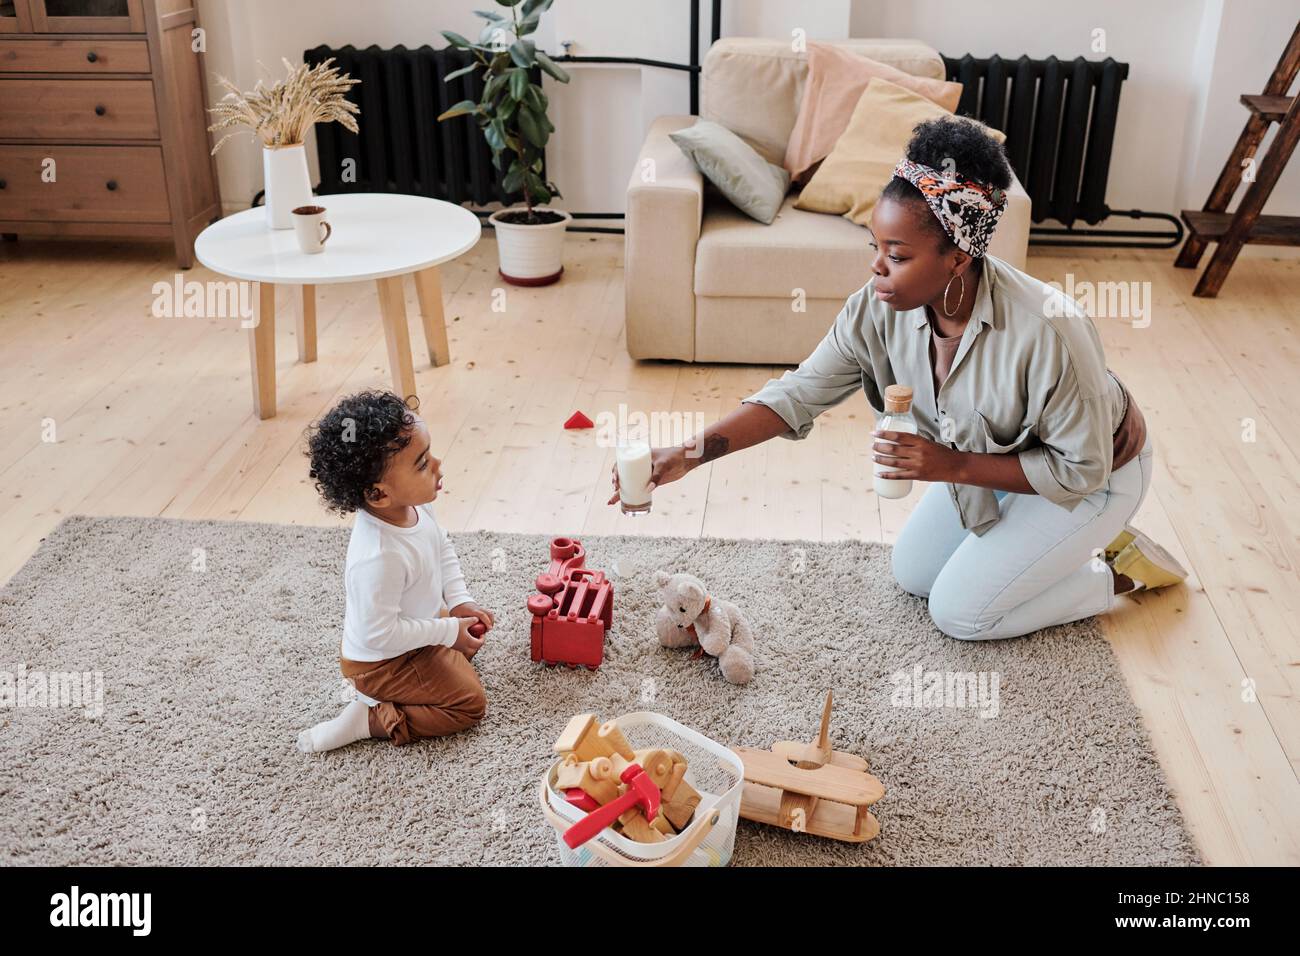 Vorsichtige junge afroamerikanische Mutter im Kopftuch, die auf dem Boden sitzt und dem kleinen Sohn ein Glas Milch gibt Stockfoto